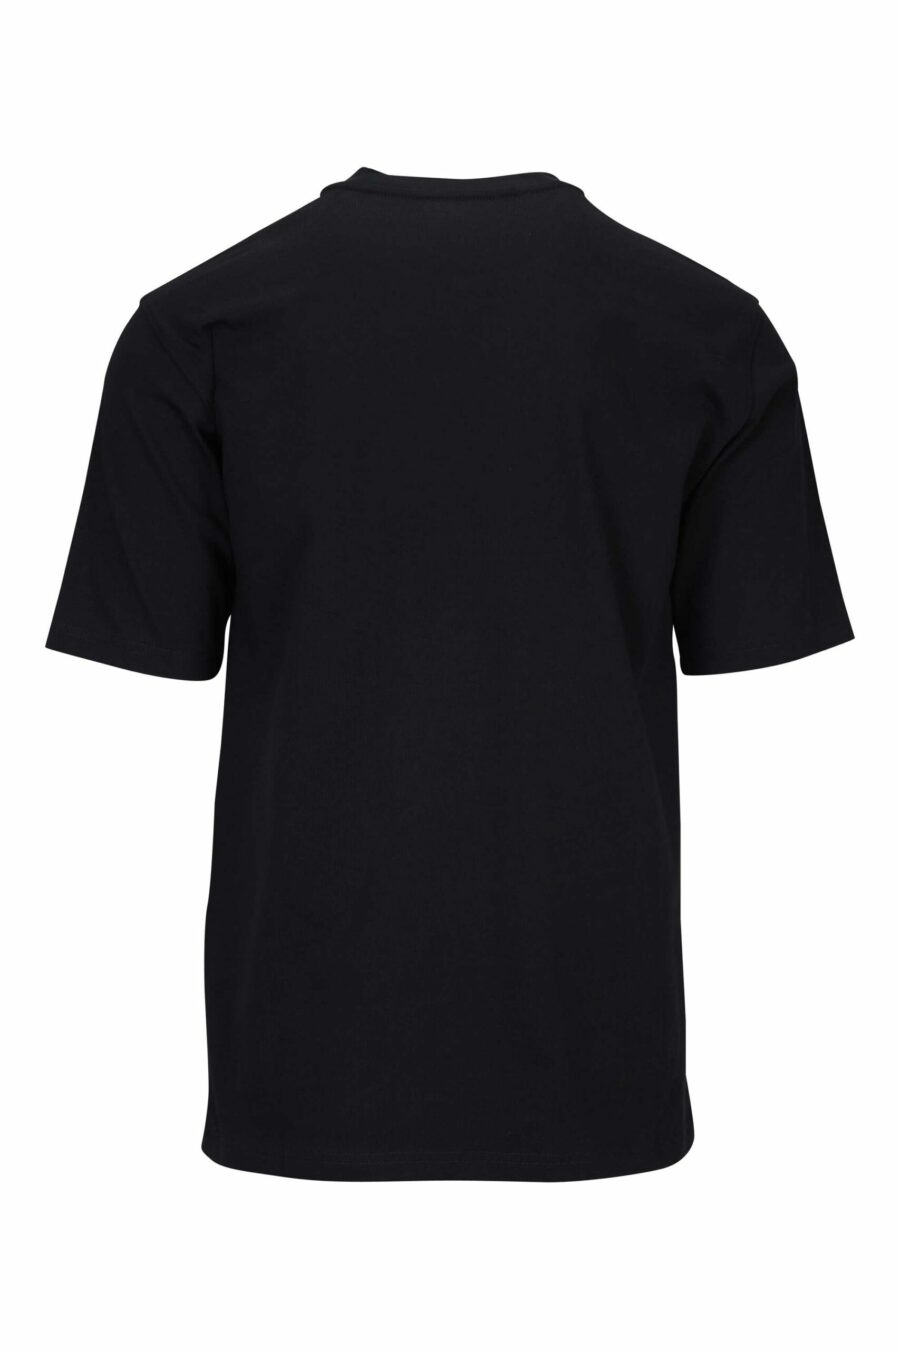 T-shirt noir mélangé avec poche monochrome et étiquette logo - 667113452036 2 scaled